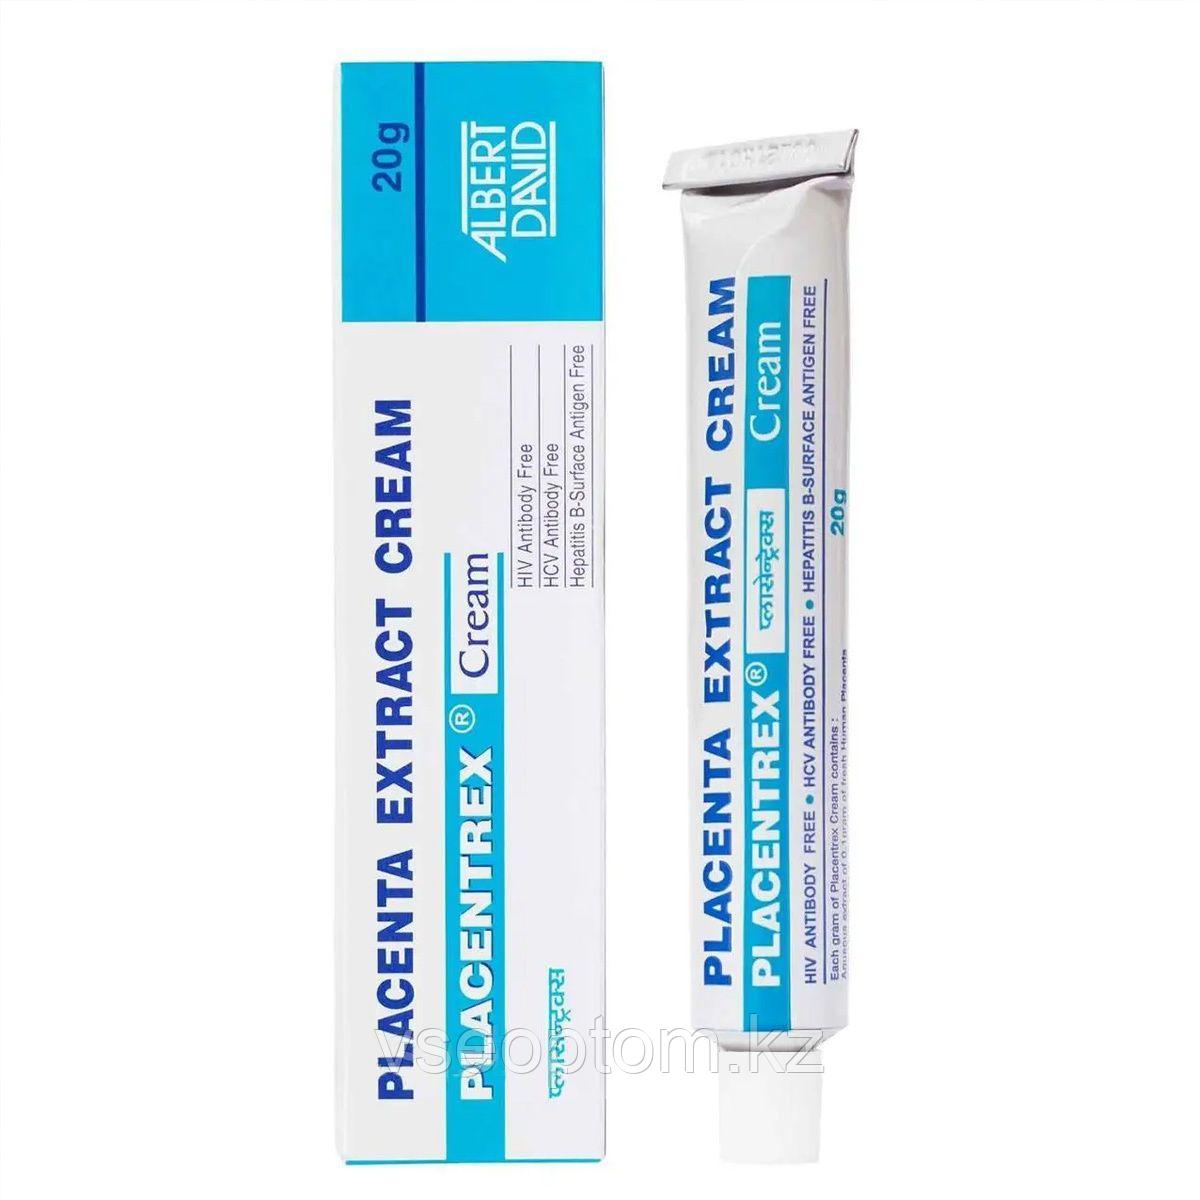 Крем Плацентрекс ( Placentrex cream ) для омолаживания кожи лица 20 гр